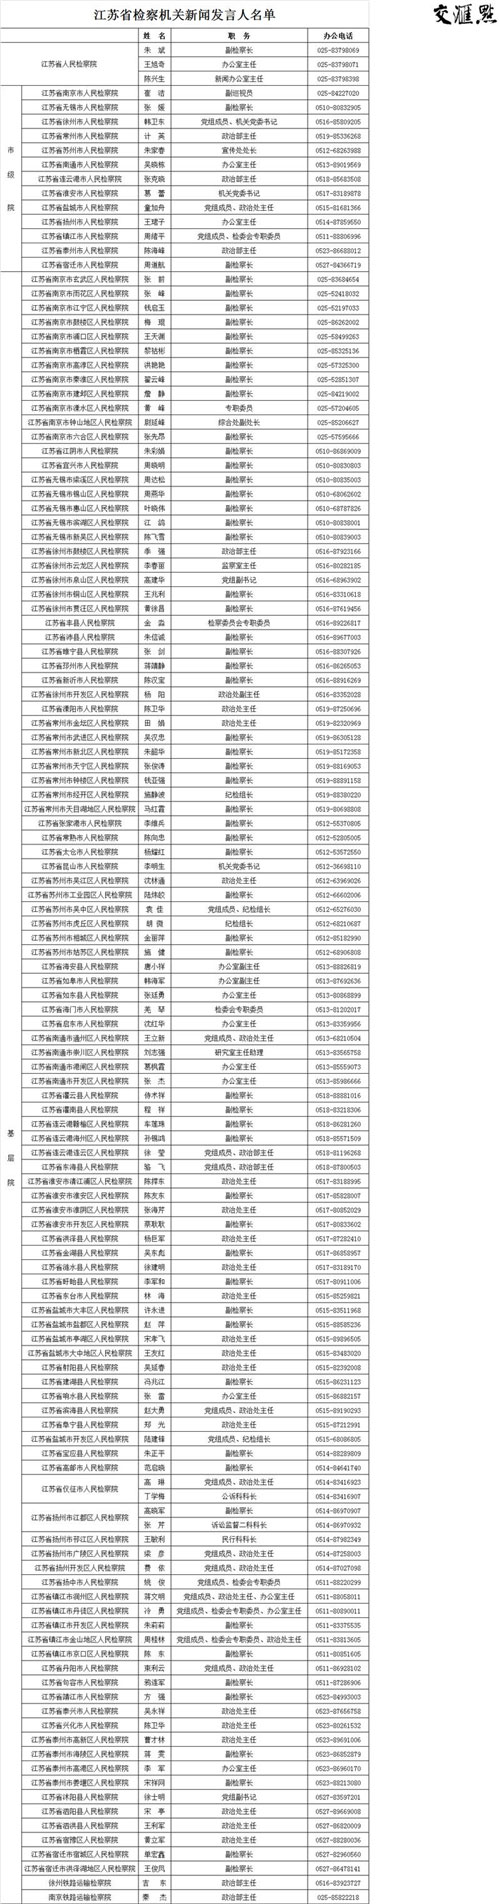 江苏省检察院公布全省检察机关130名新闻发言人名单